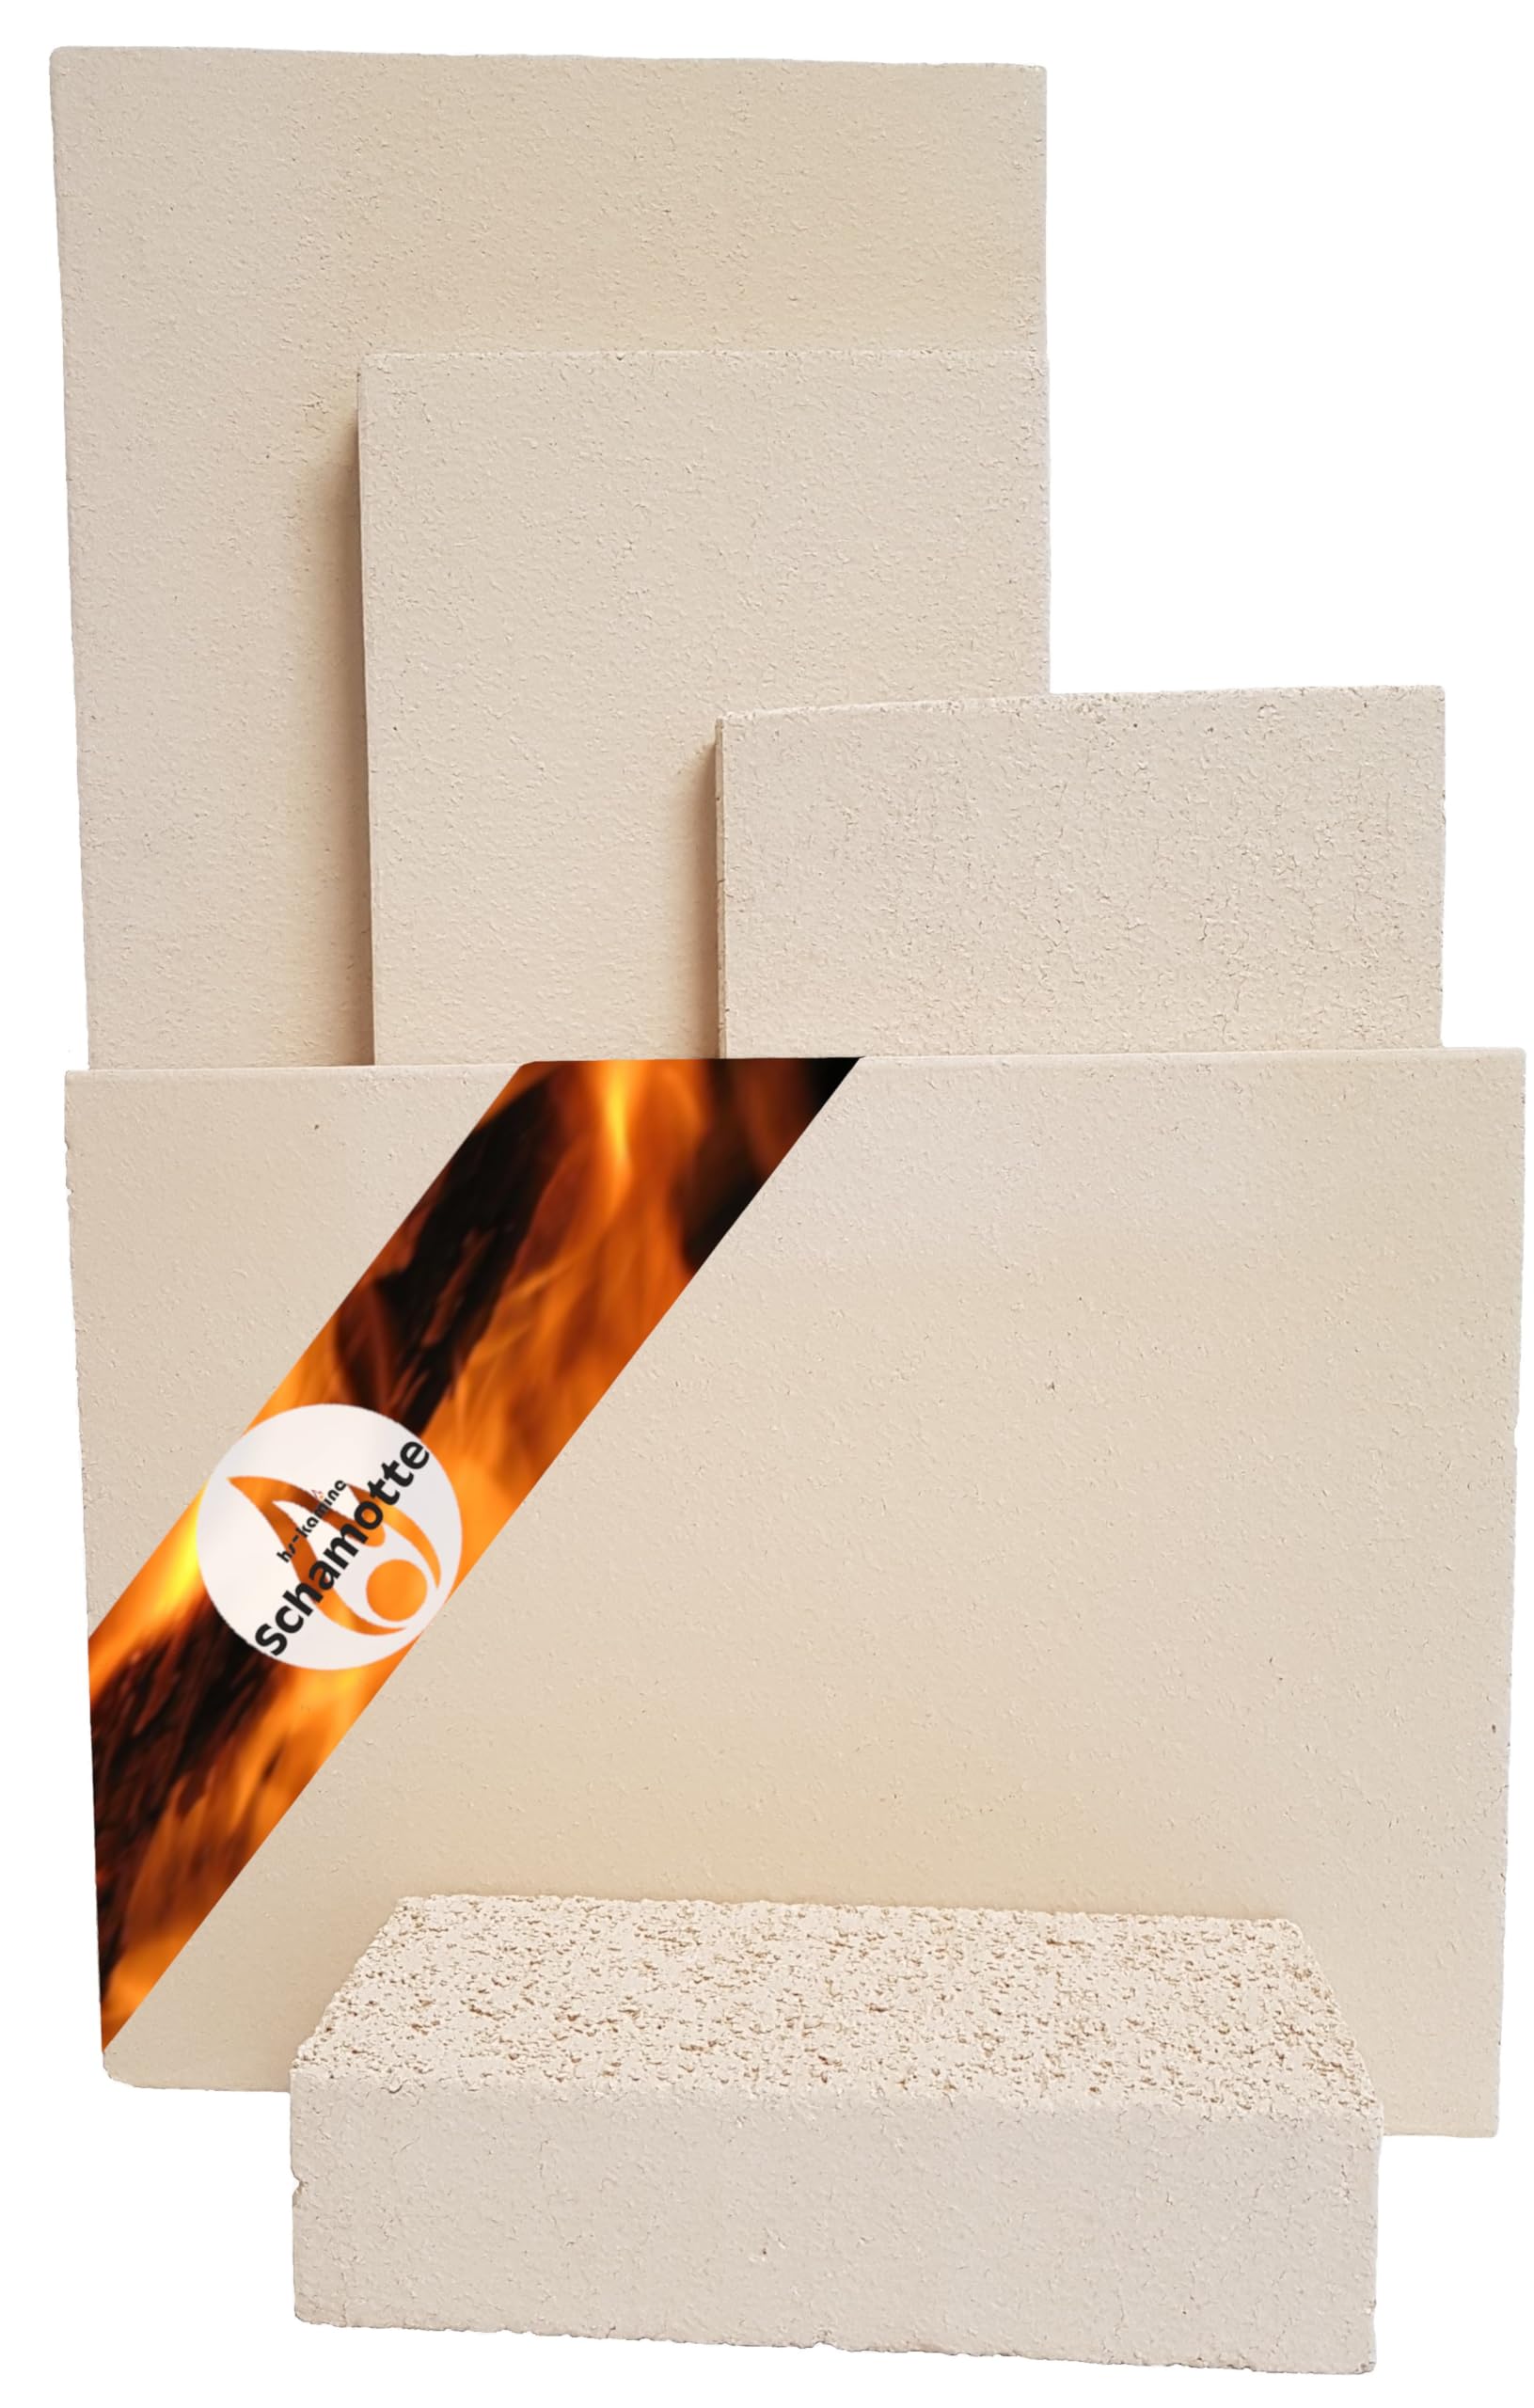 Schamotteplatten Premium Wh für den Feuerraum und auch für Holzbacköfen, Pizzaöfen und Grills feuerfest & lebensmittelecht viele Größen online verfügbar (400 x 200 x 30 mm, 1 Stück)